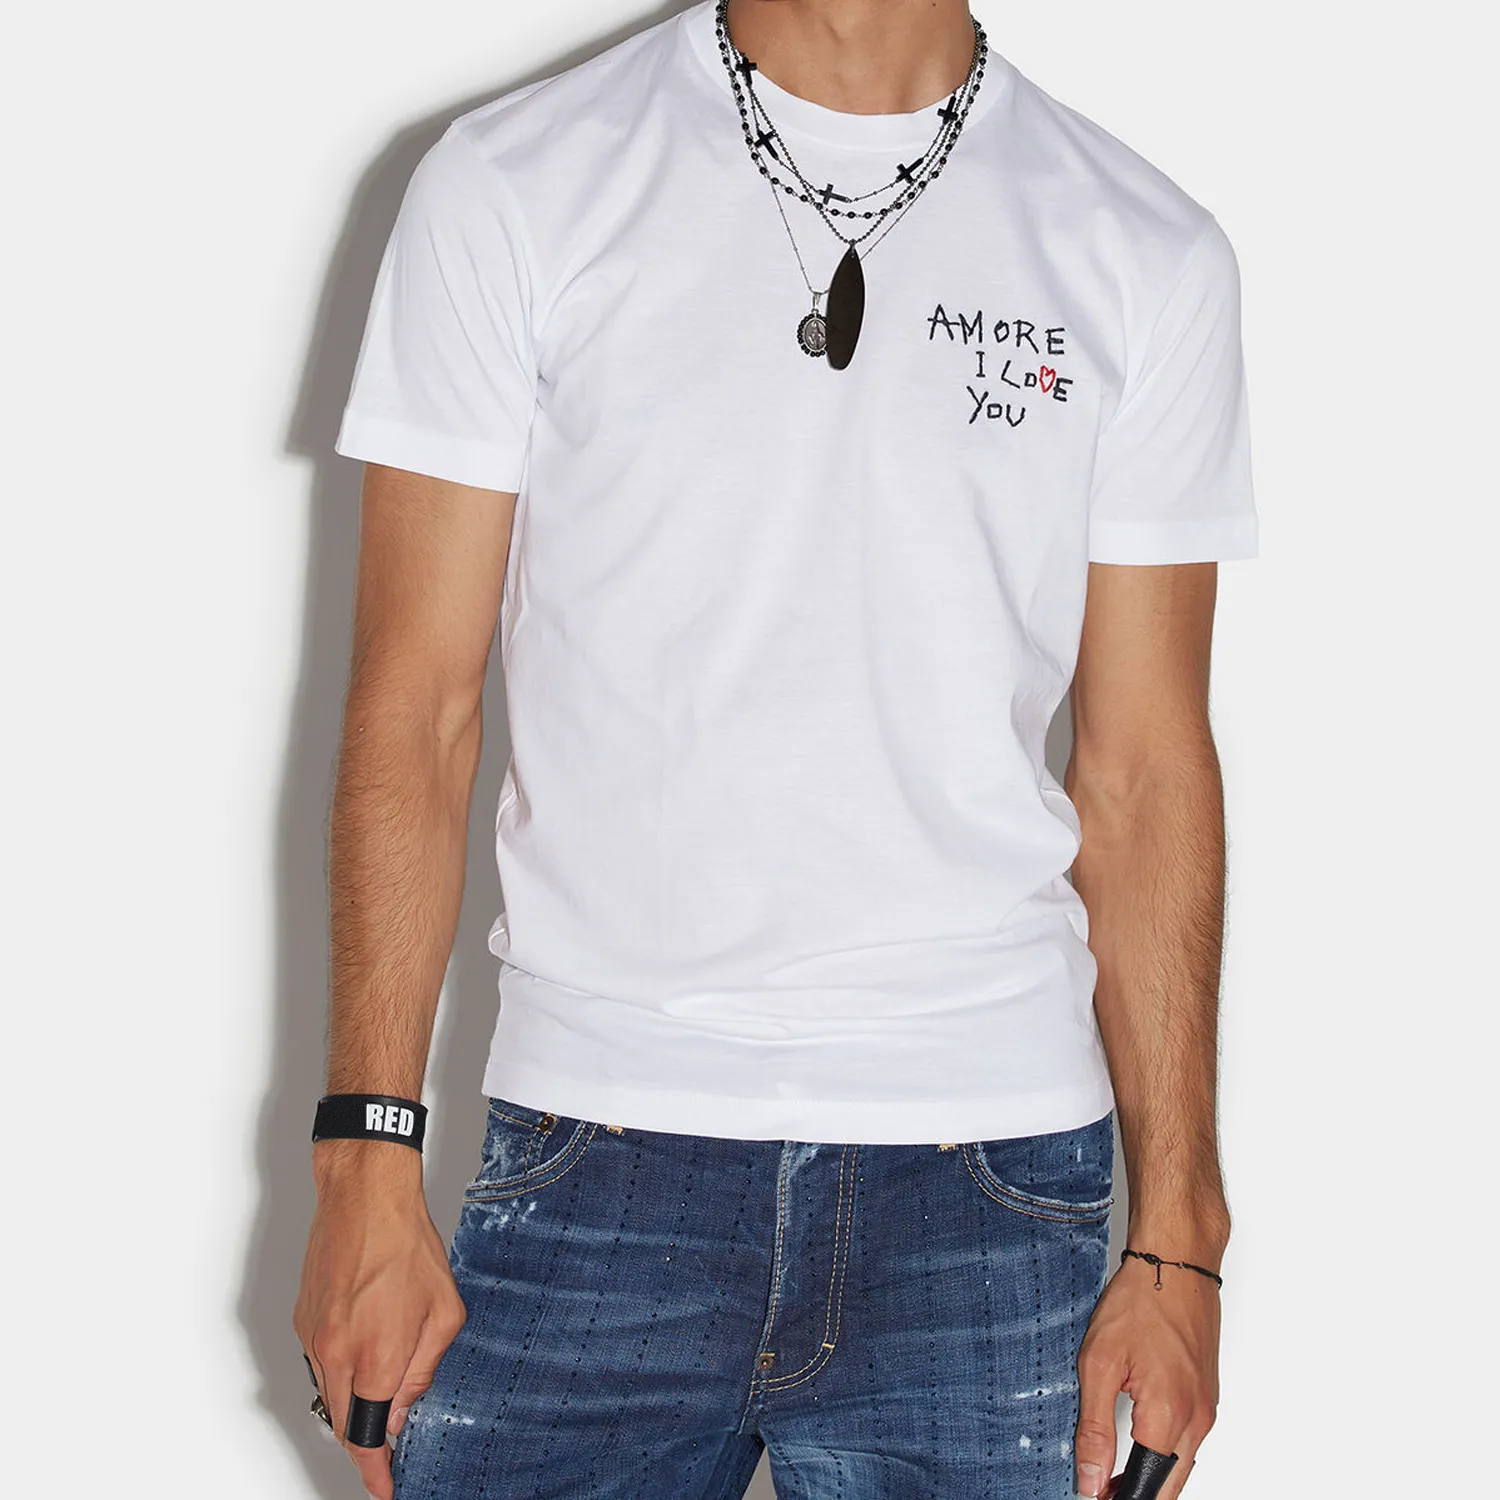 DSQ PHANTOM TURTLE Hommes T-Shirts Hommes Designer T-shirts Noir Blanc Amore Je T'aime Cool T-shirt Hommes D'été Mode Casual Rue T-shirt Tops Plus La Taille M-XXXL 68760